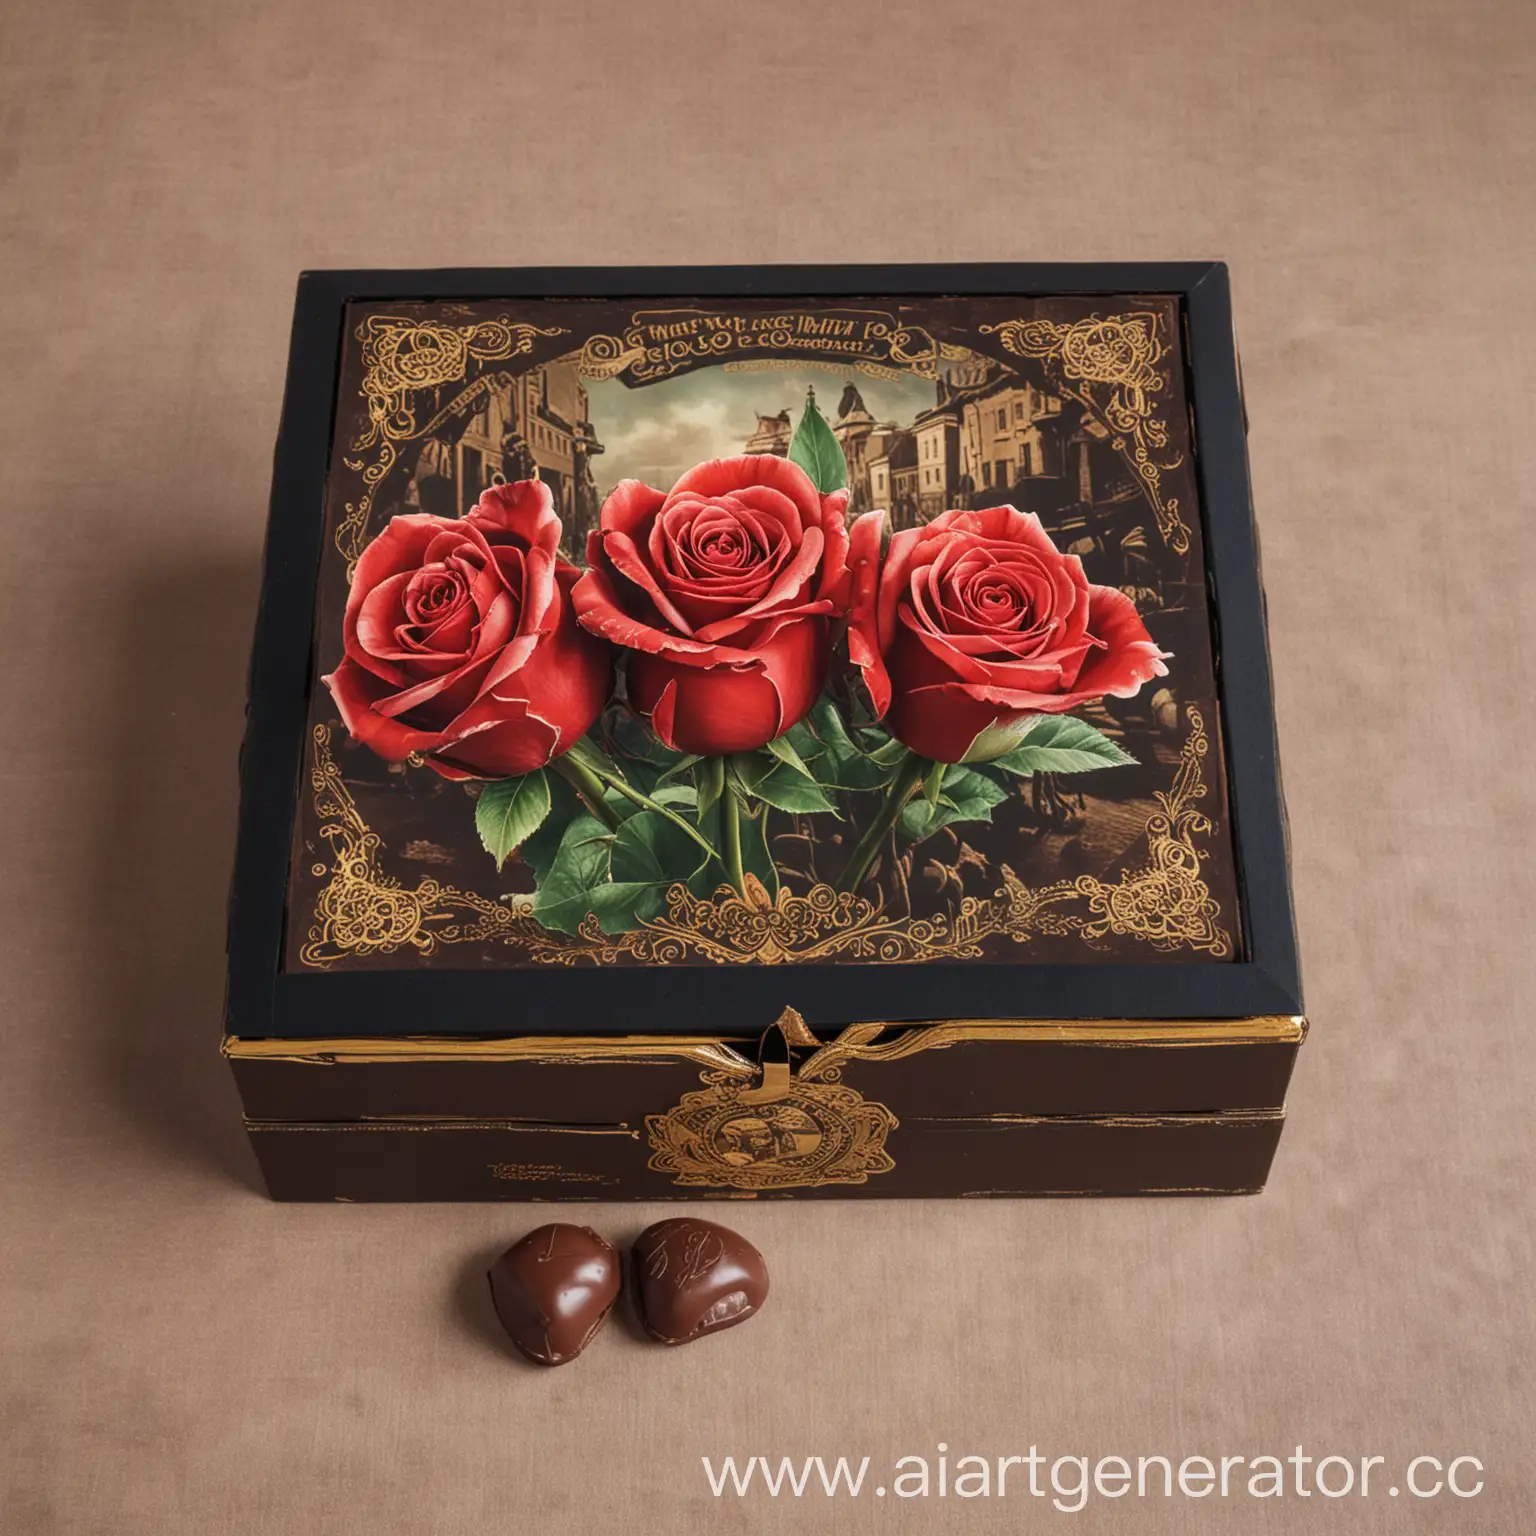 Дизайн коробки конфет , в честь праздника дня шахтера, города Донецка, необходимо в дизайне отобразить розы и шахтеров